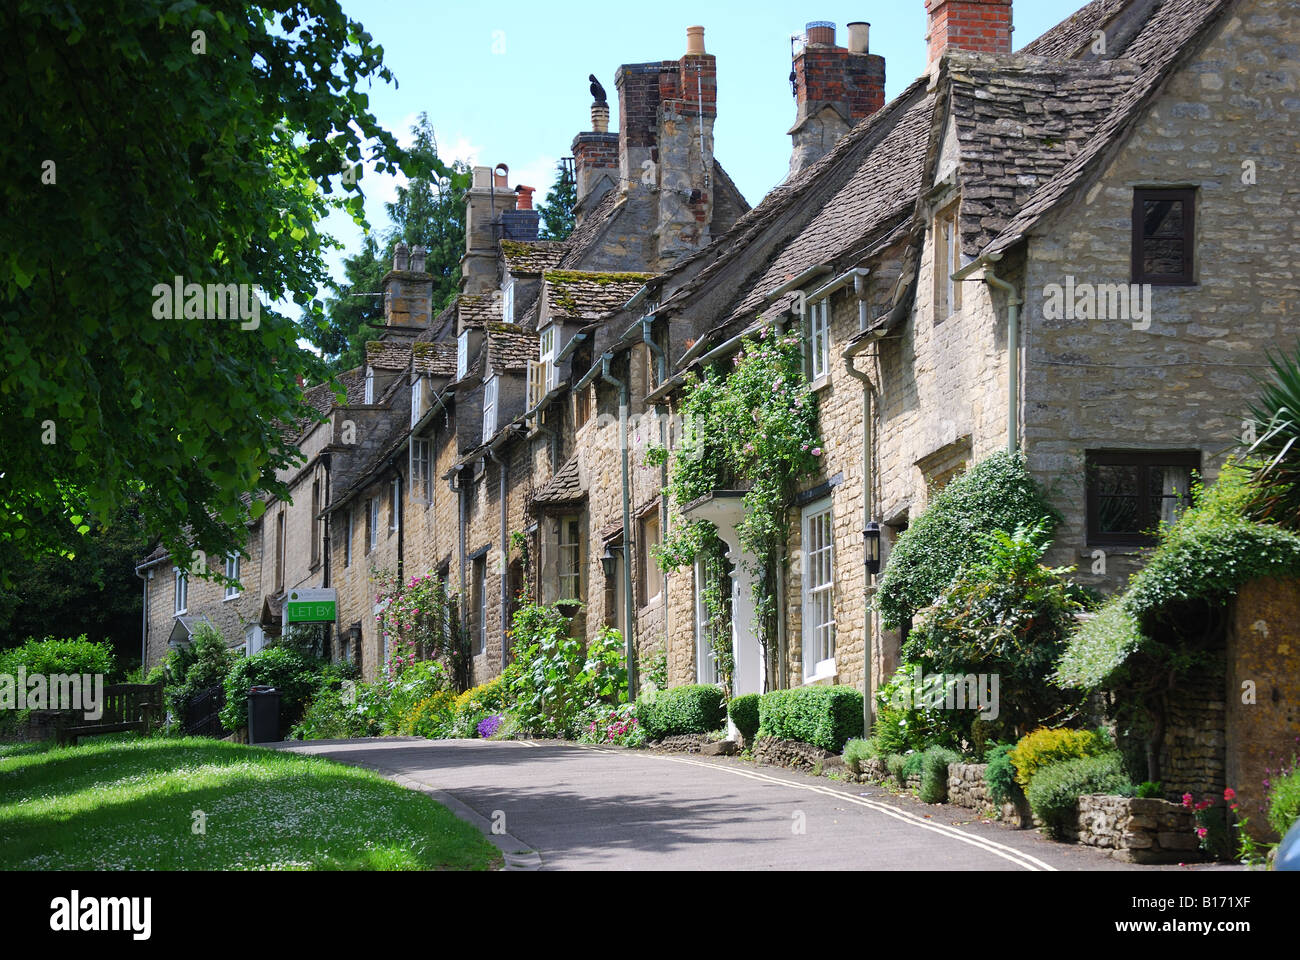 Rangée de cottages, East High Street, Burford, Cotswolds, Oxfordshire, Angleterre, Royaume-Uni Banque D'Images